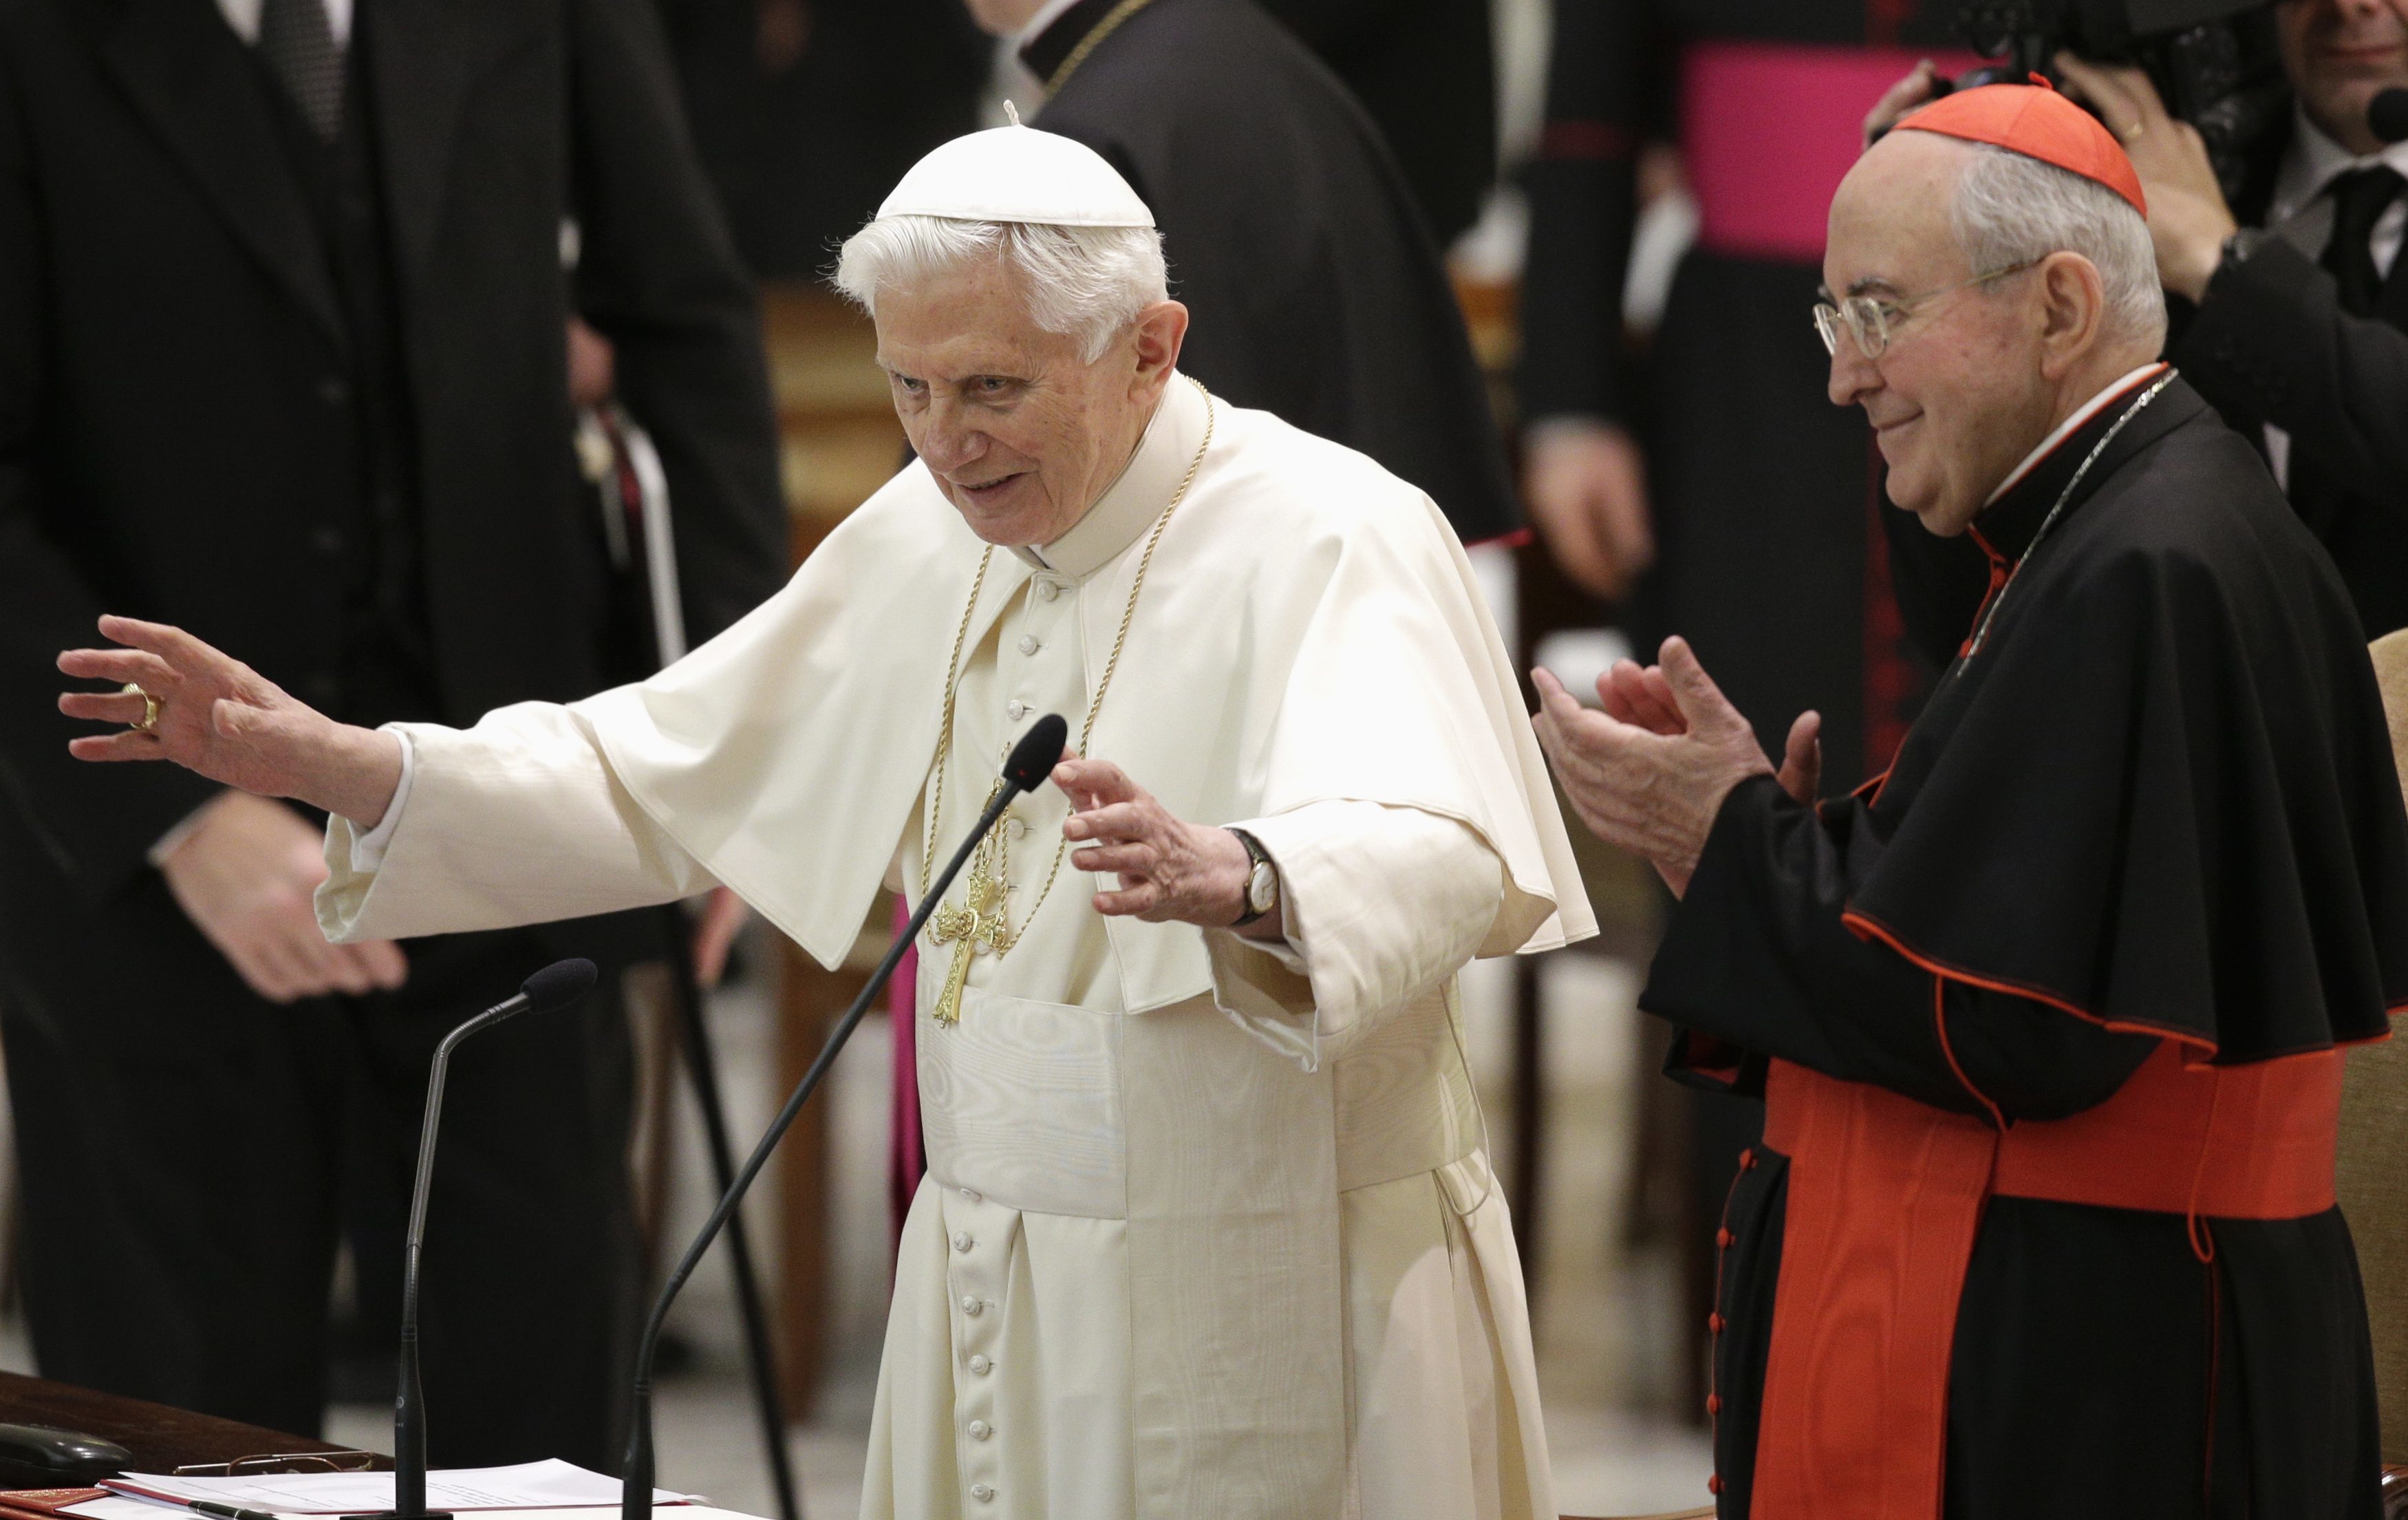 Η πρώτη ημέρα χωρίς τον Πάπα – Ποιες είναι οι εξελίξεις στο Βατικανό